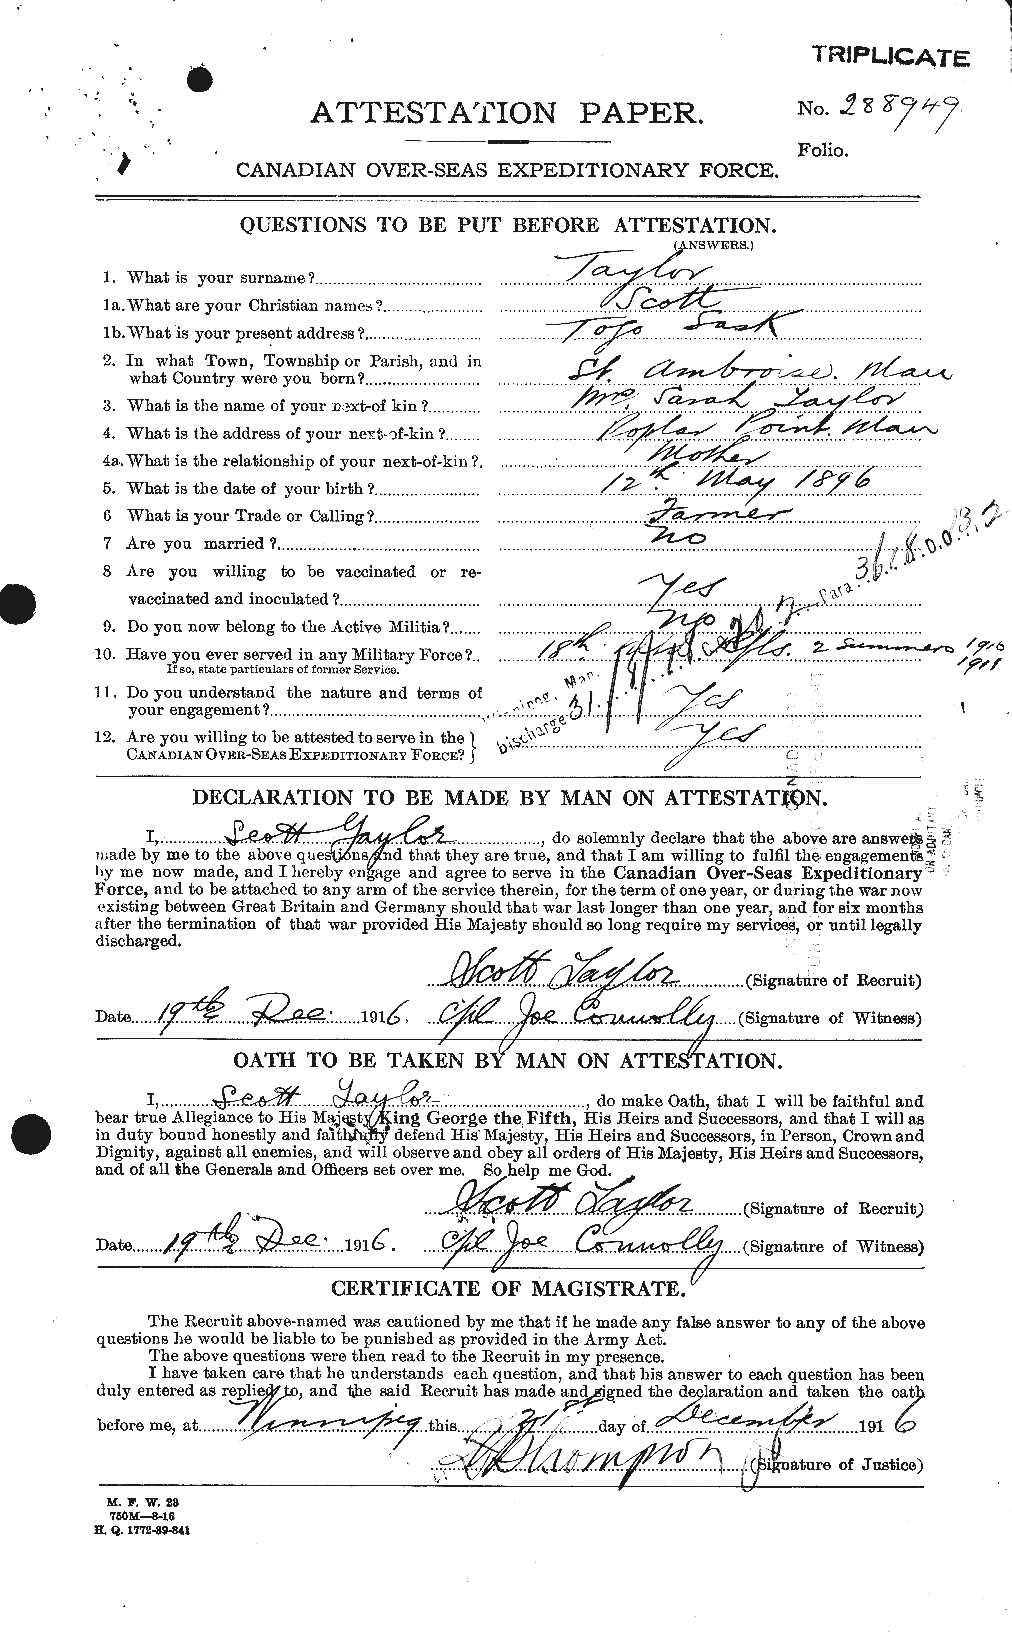 Dossiers du Personnel de la Première Guerre mondiale - CEC 627888a